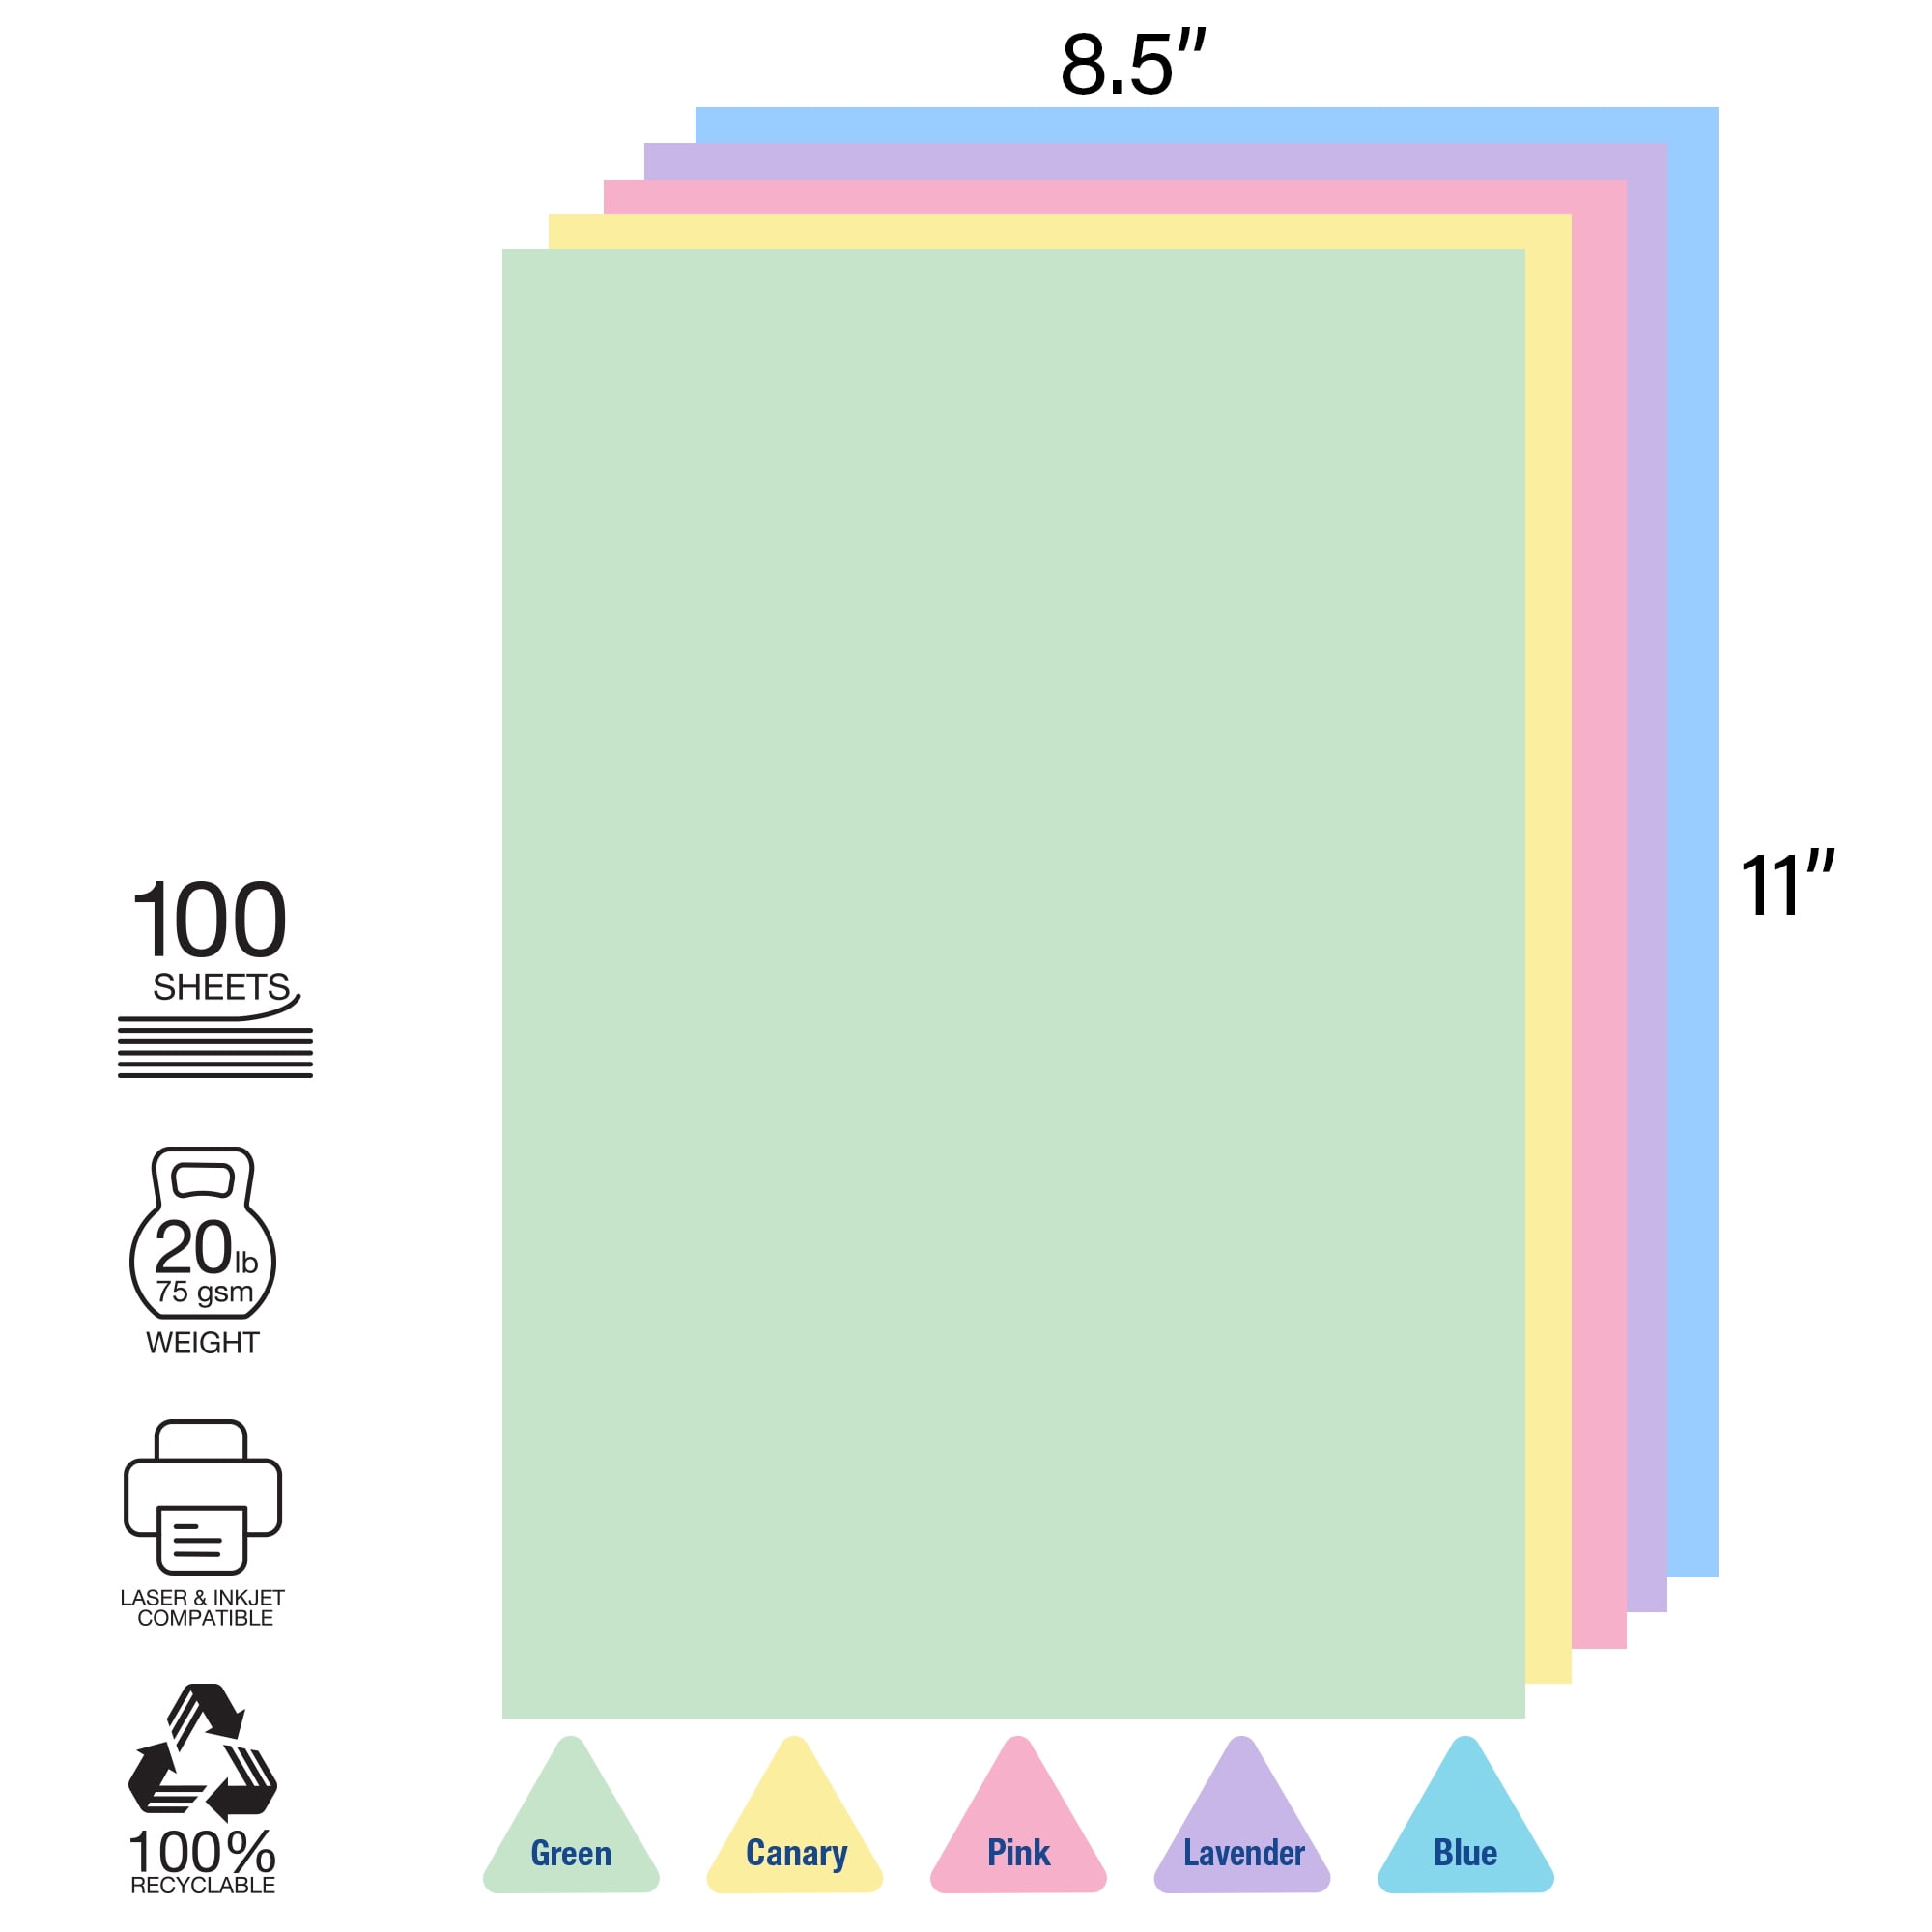 BAZIC Pastel Color Multipurpose Paper 100 Sheets - Bazicstore